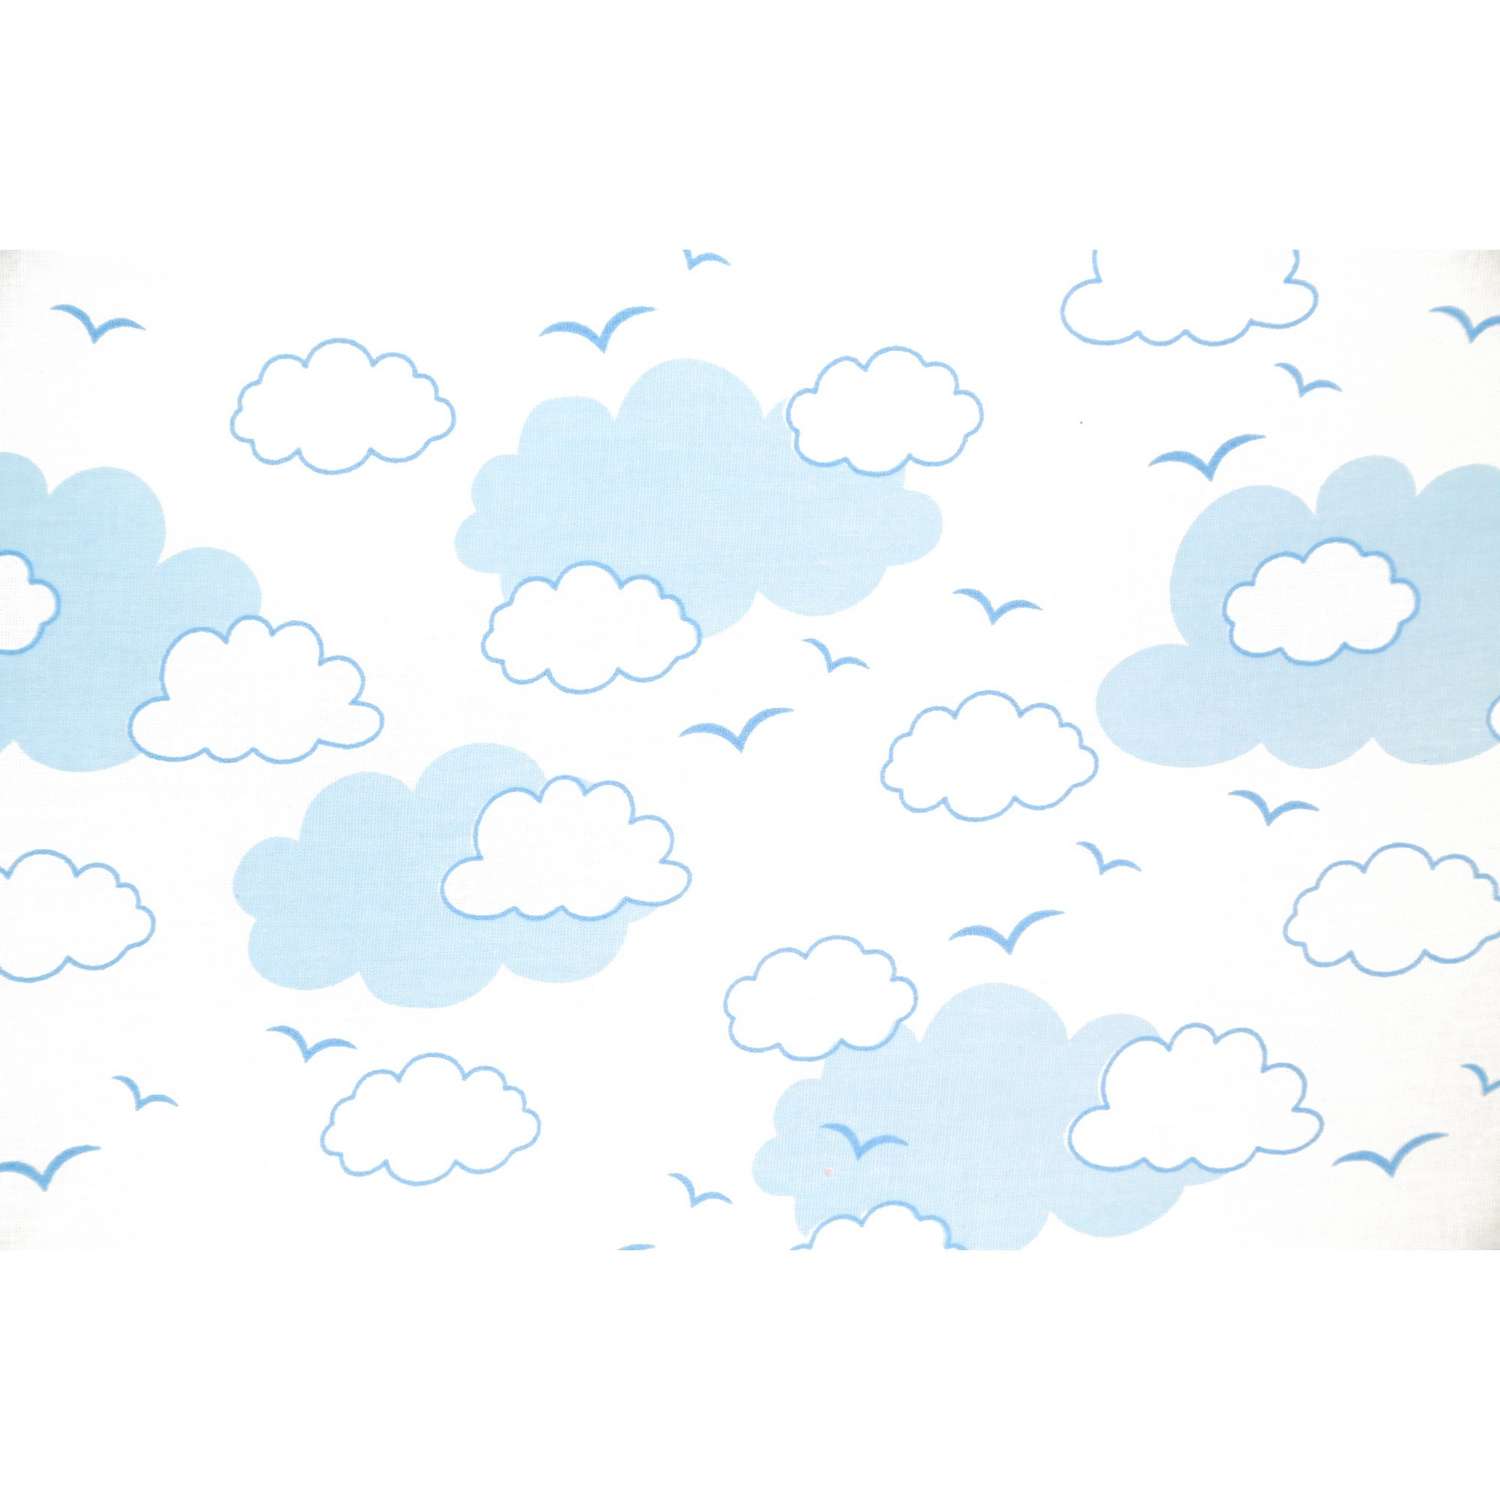 Комплект постельного белья Споки Ноки Облака Голубой 3предмета DMC111/6BL - фото 3